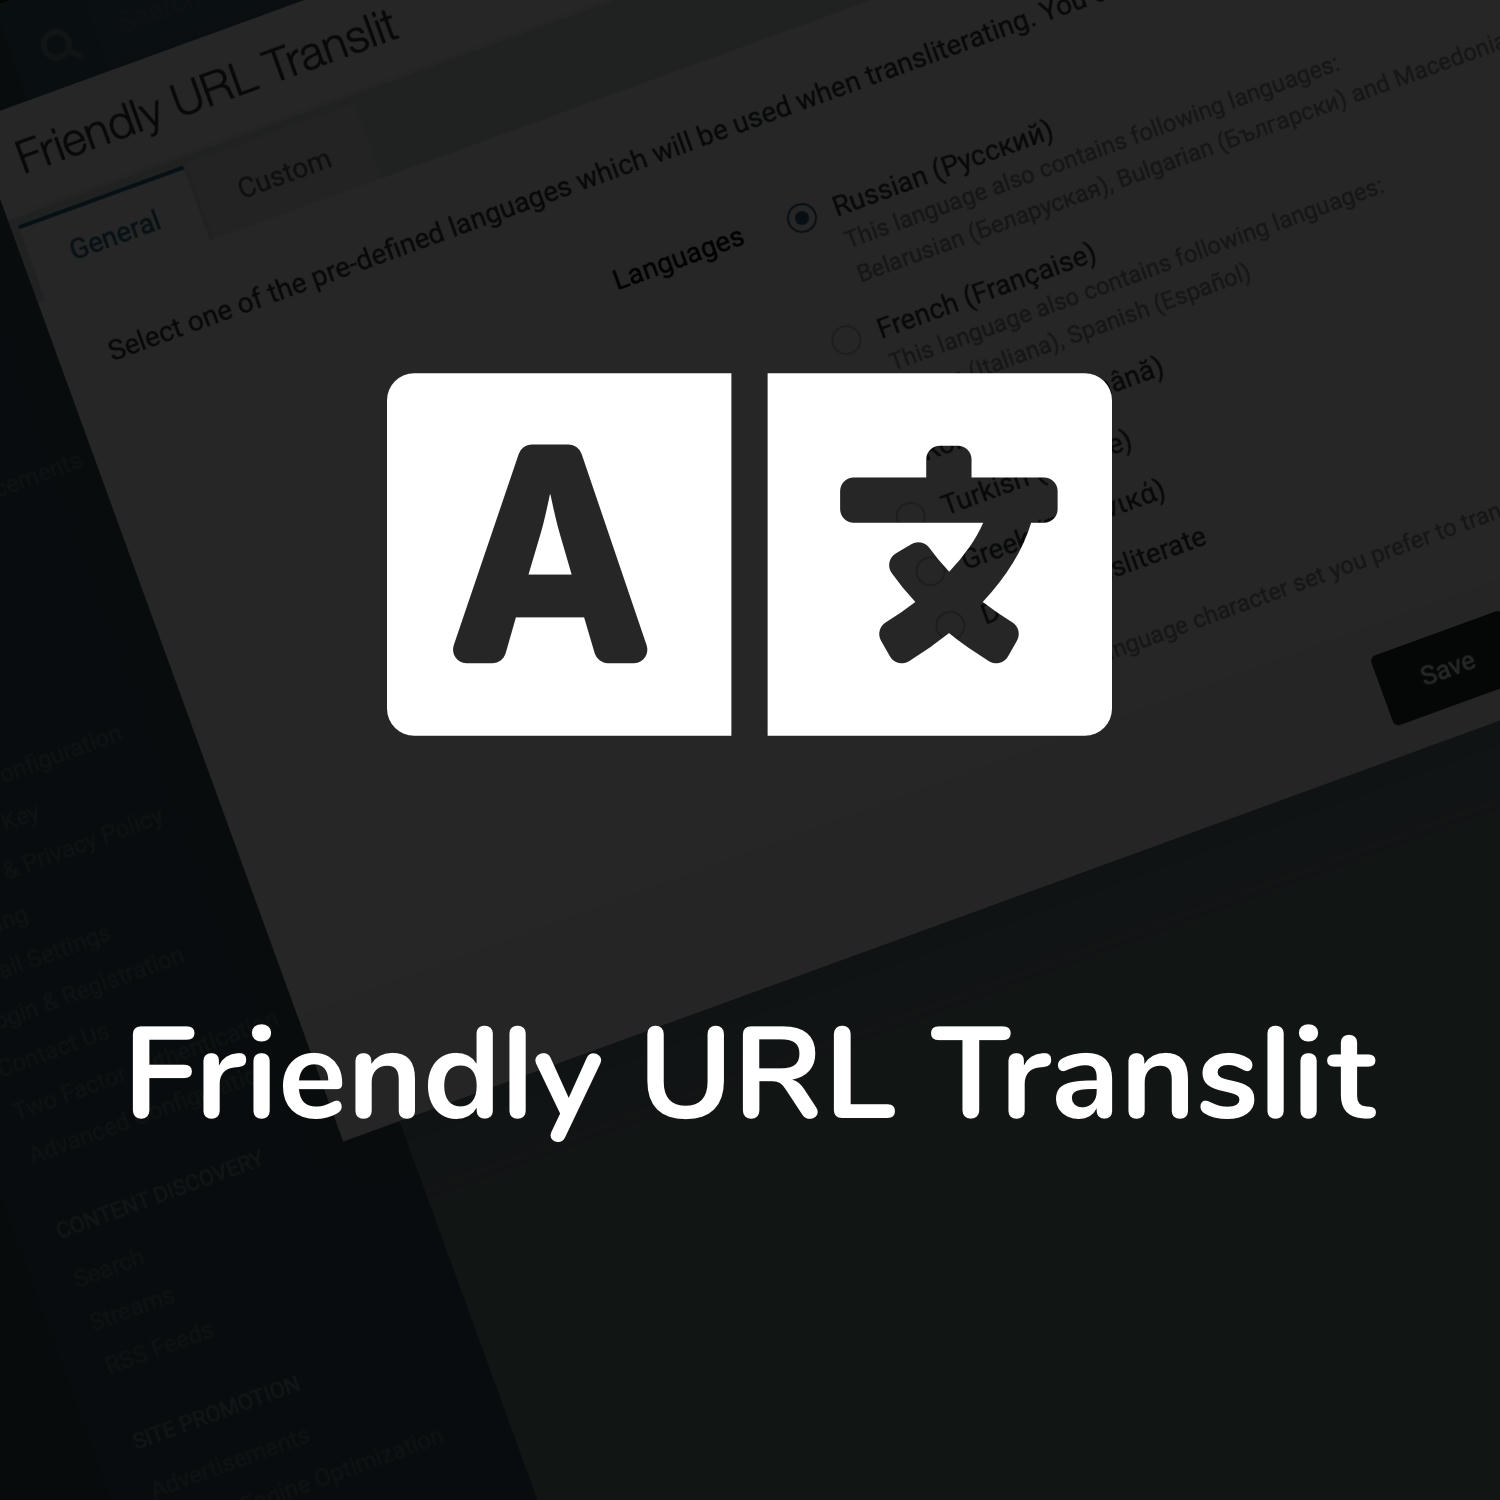 اطلاعات بیشتر در مورد "افزونه Friendly URL Translit"